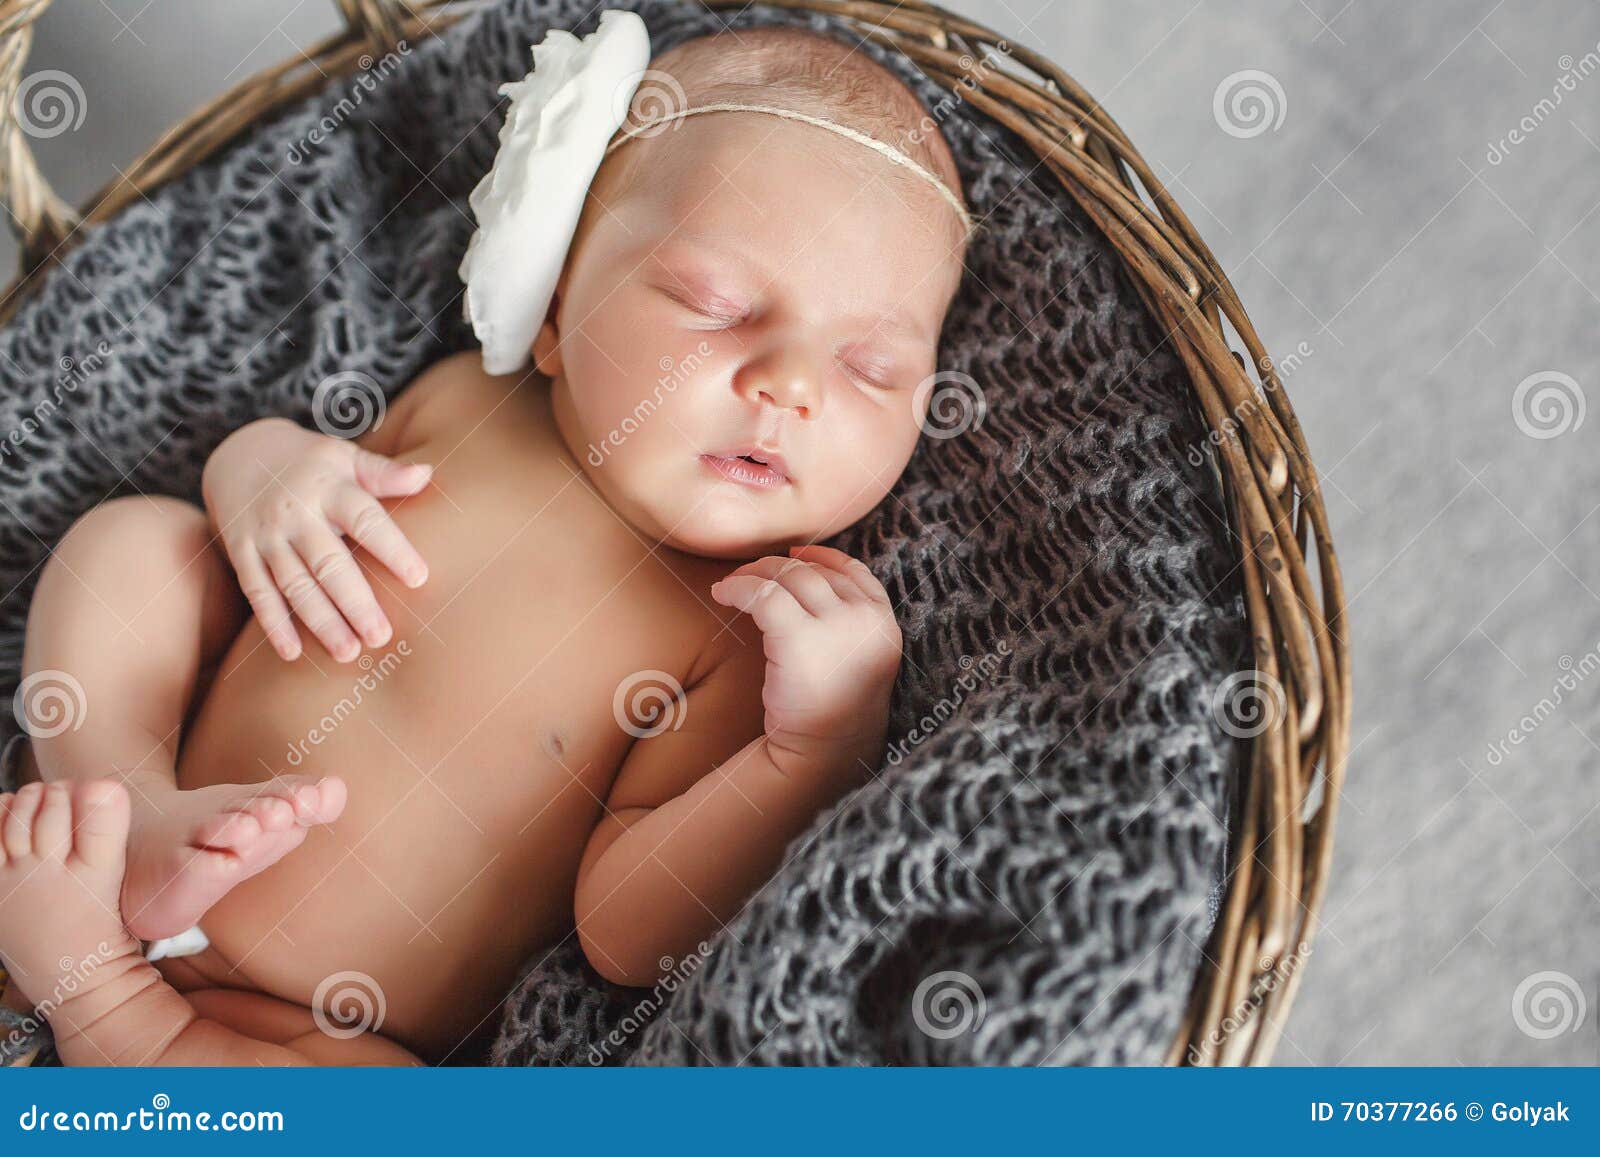 一个圆的柳条筐的新出生的婴孩. 有白花的新出生的婴孩在头，甜甜地睡觉在褐色，回合，在灰色的柳条筐软绵绵地编织了披肩，缩拢他的胳膊和腿，一个睡觉的婴孩的画象灰色背景的